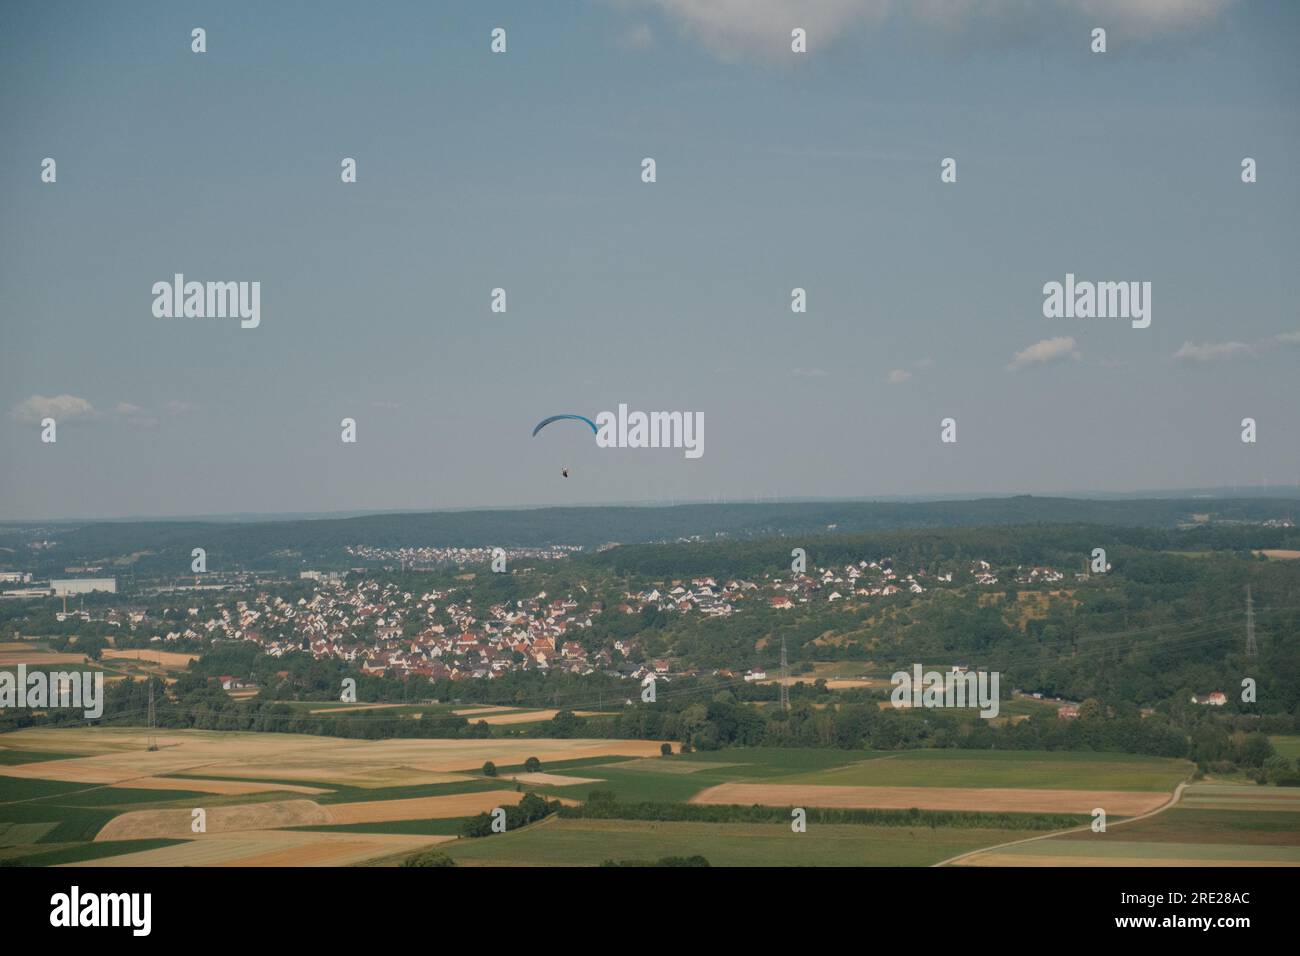 Ein Abenteurer gleitet inmitten des offenen Himmels und bietet einen fesselnden Blick auf die ruhige deutsche Landschaft und die entfernte Stadt darunter. Stockfoto